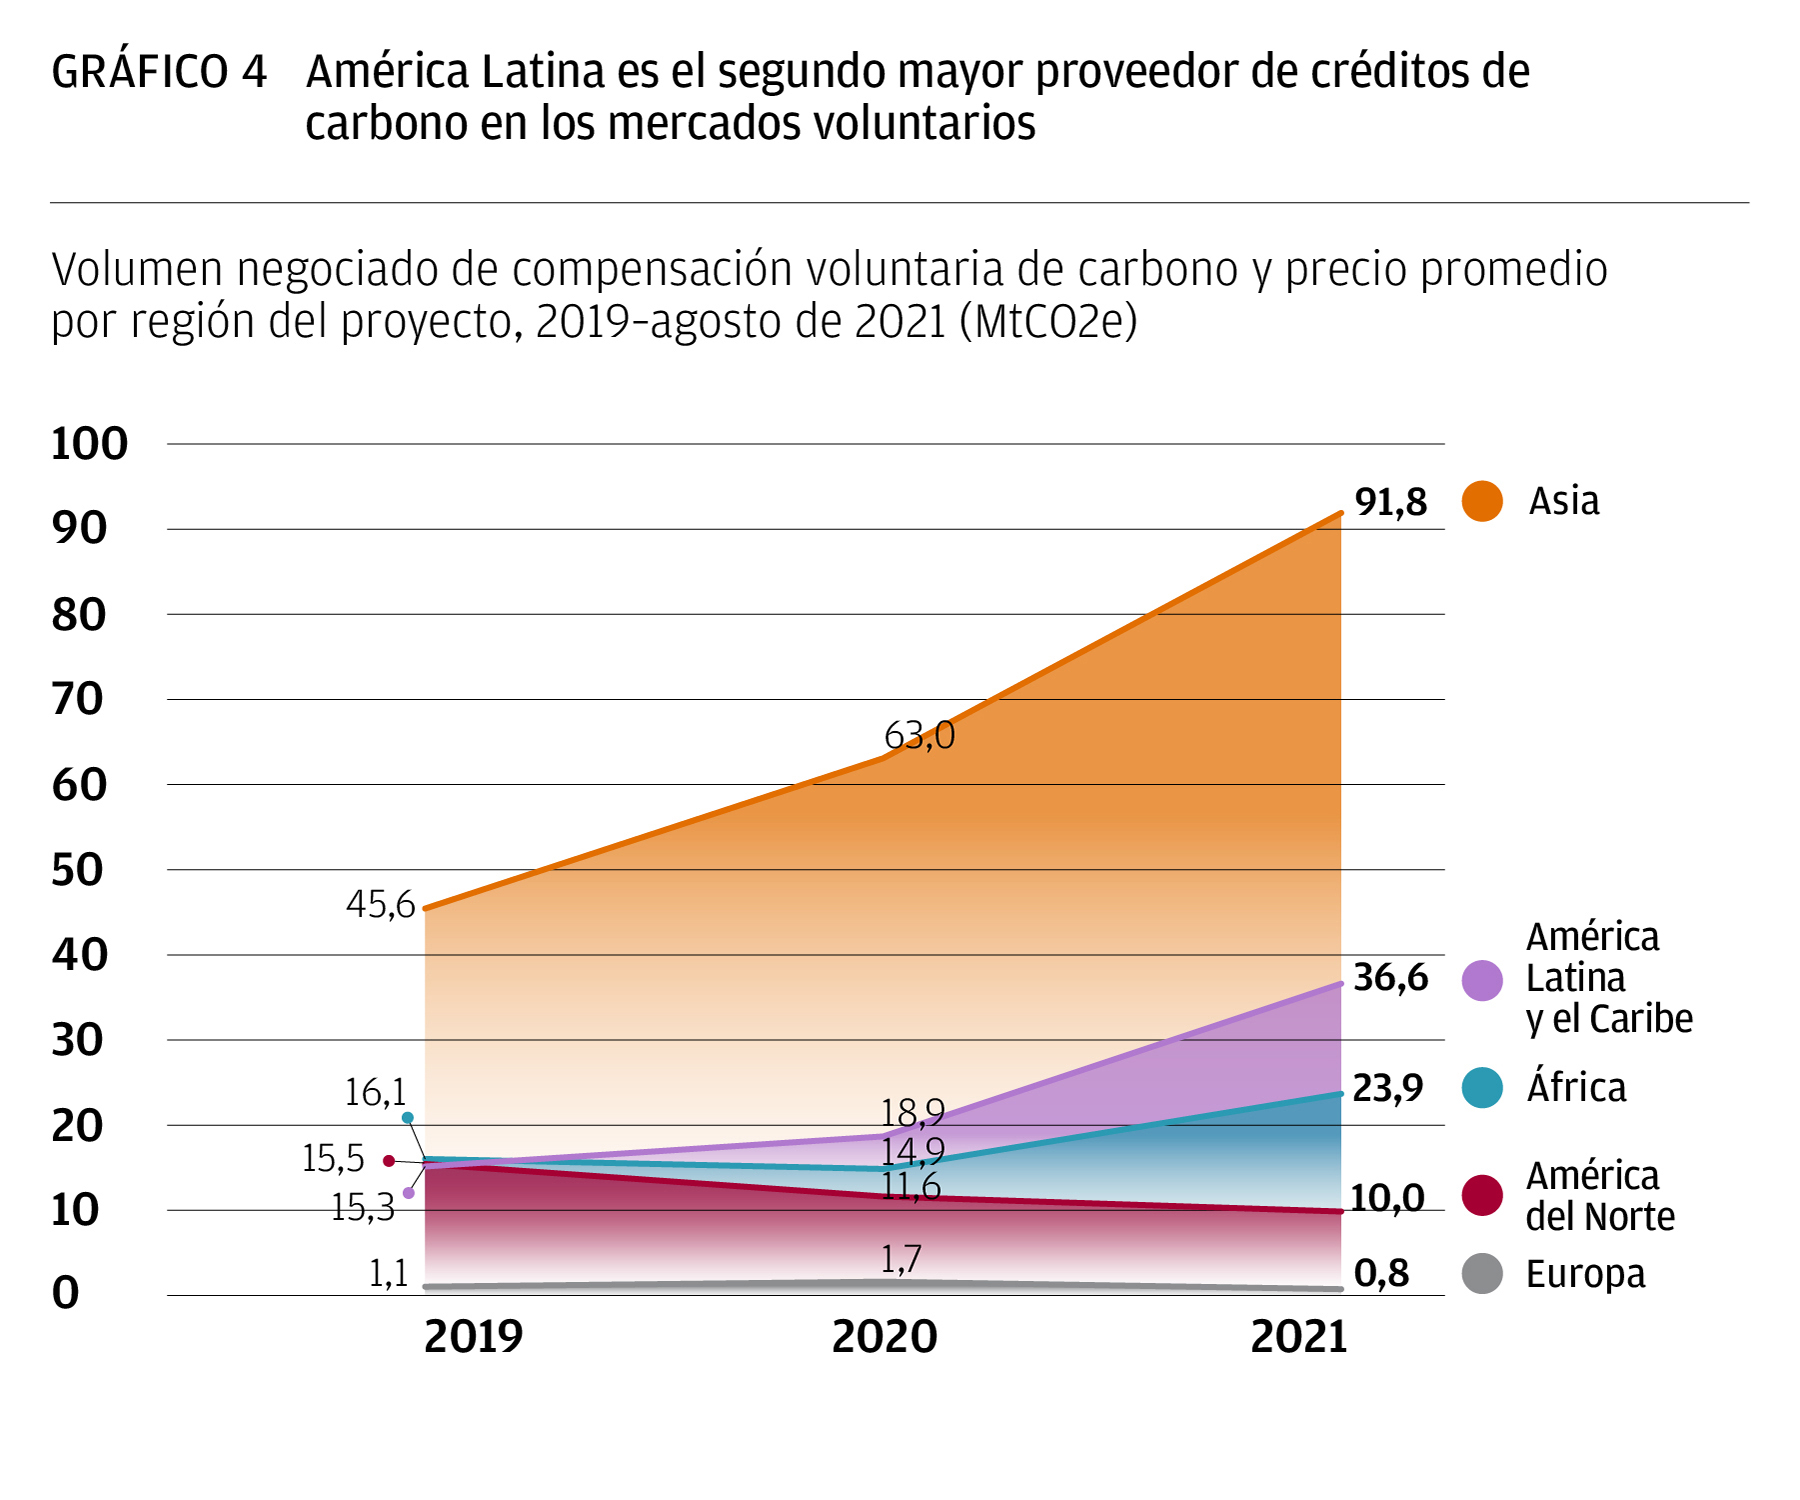 America Latina es el segundo mayor proveedor de creditos de carbono en los mercados voluntarios